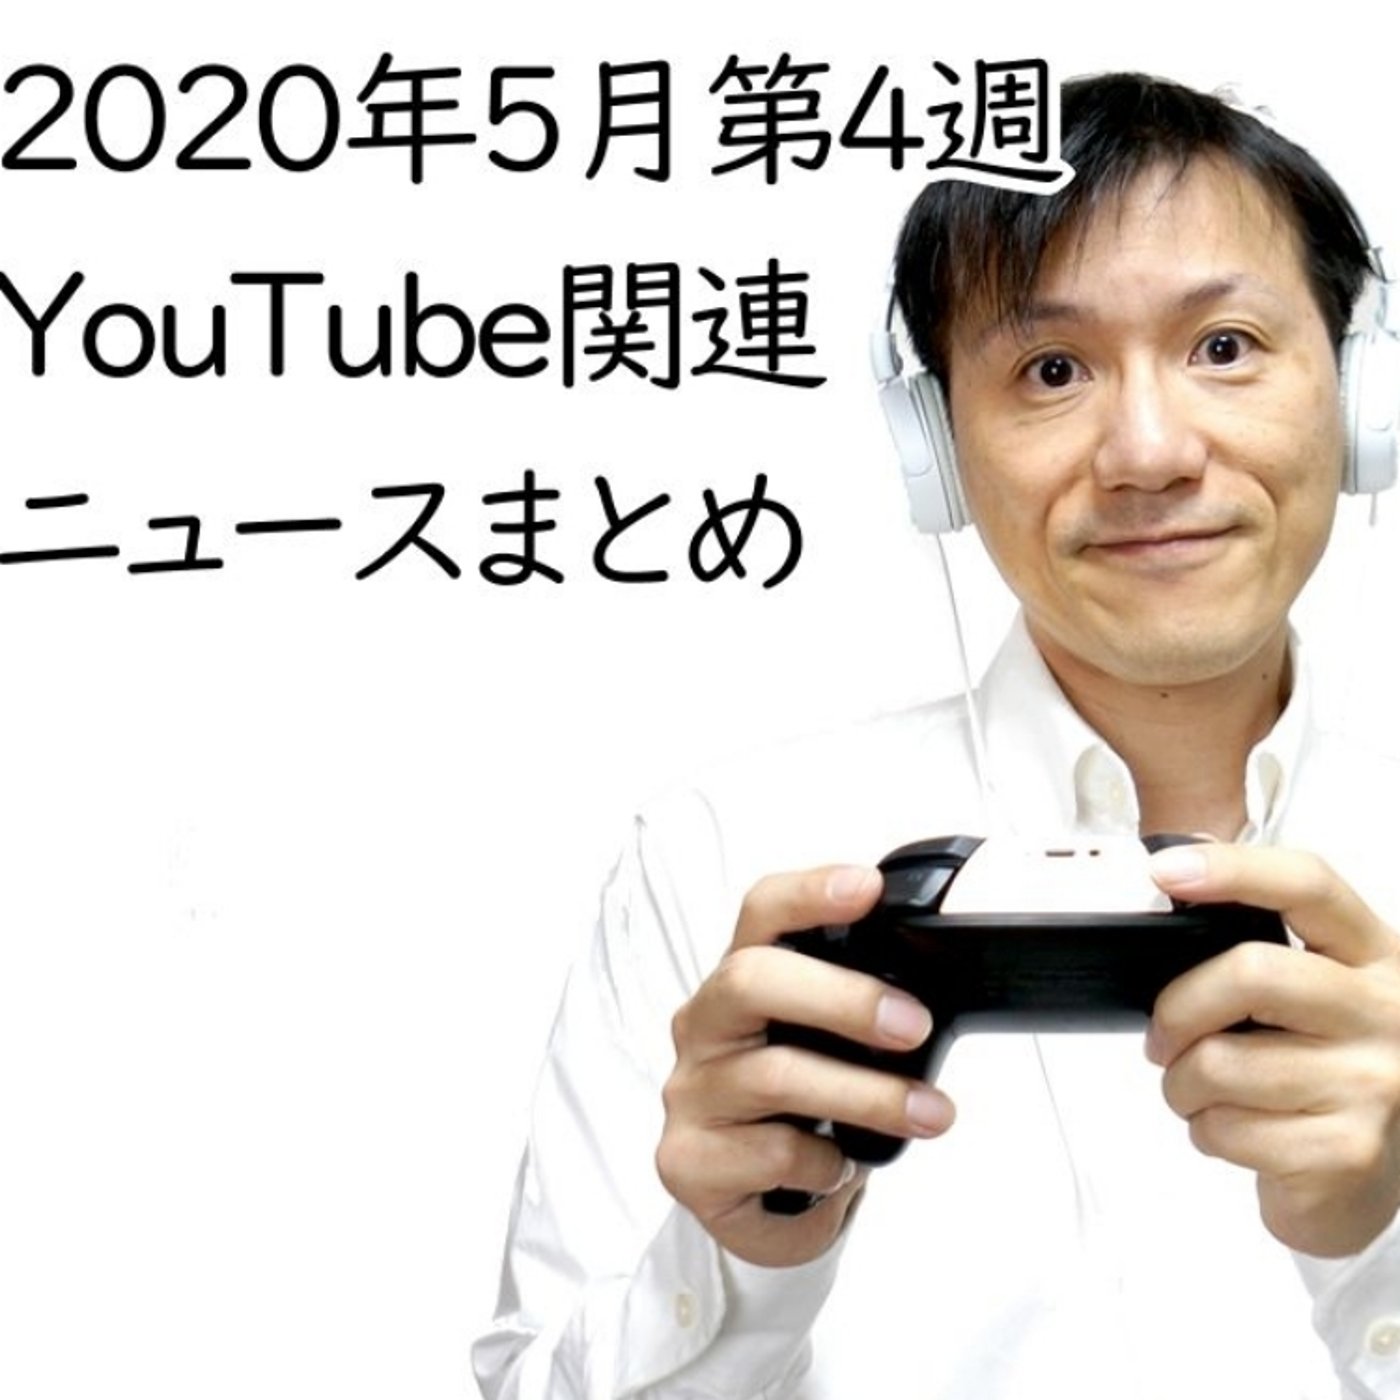 2020年5月第4週YouTube関連ニュースまとめ～増える誹謗中傷【#107】